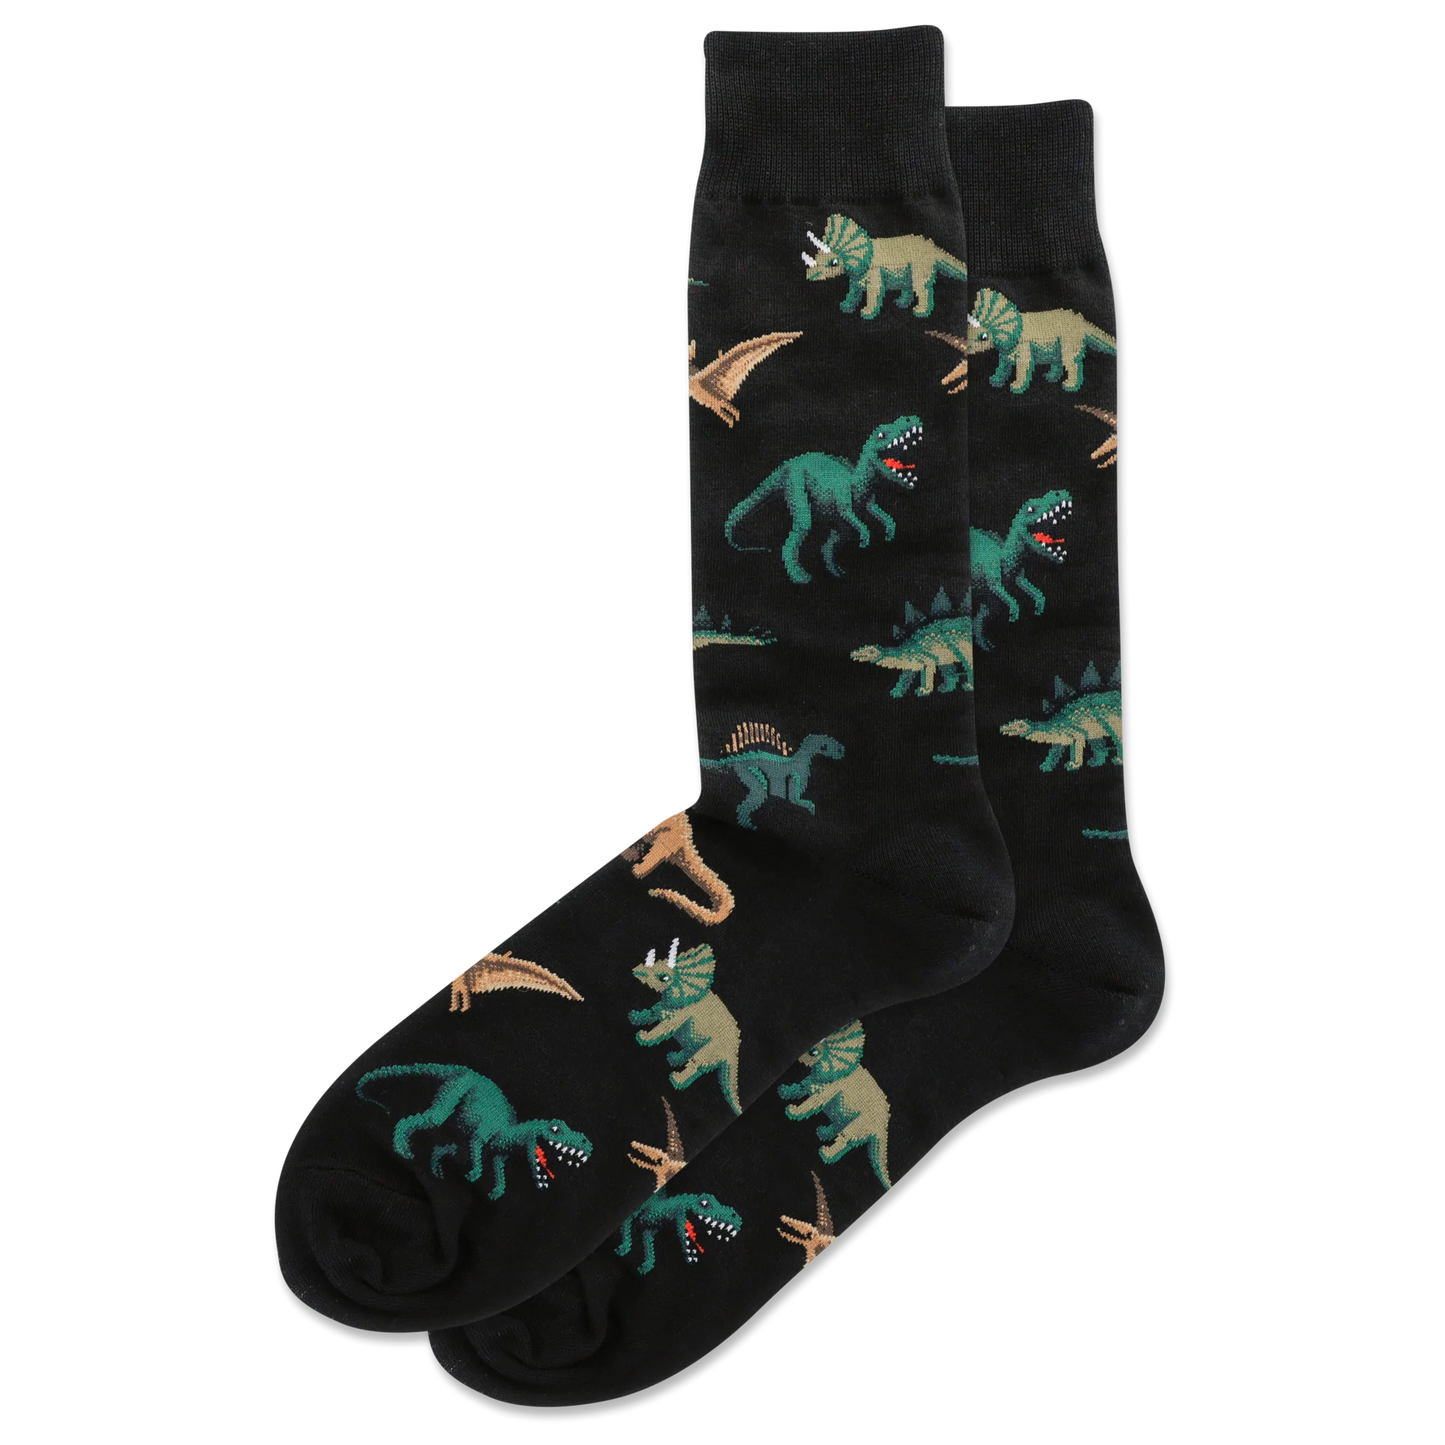 HOTSOX Men's Dinosaur Crew Socks